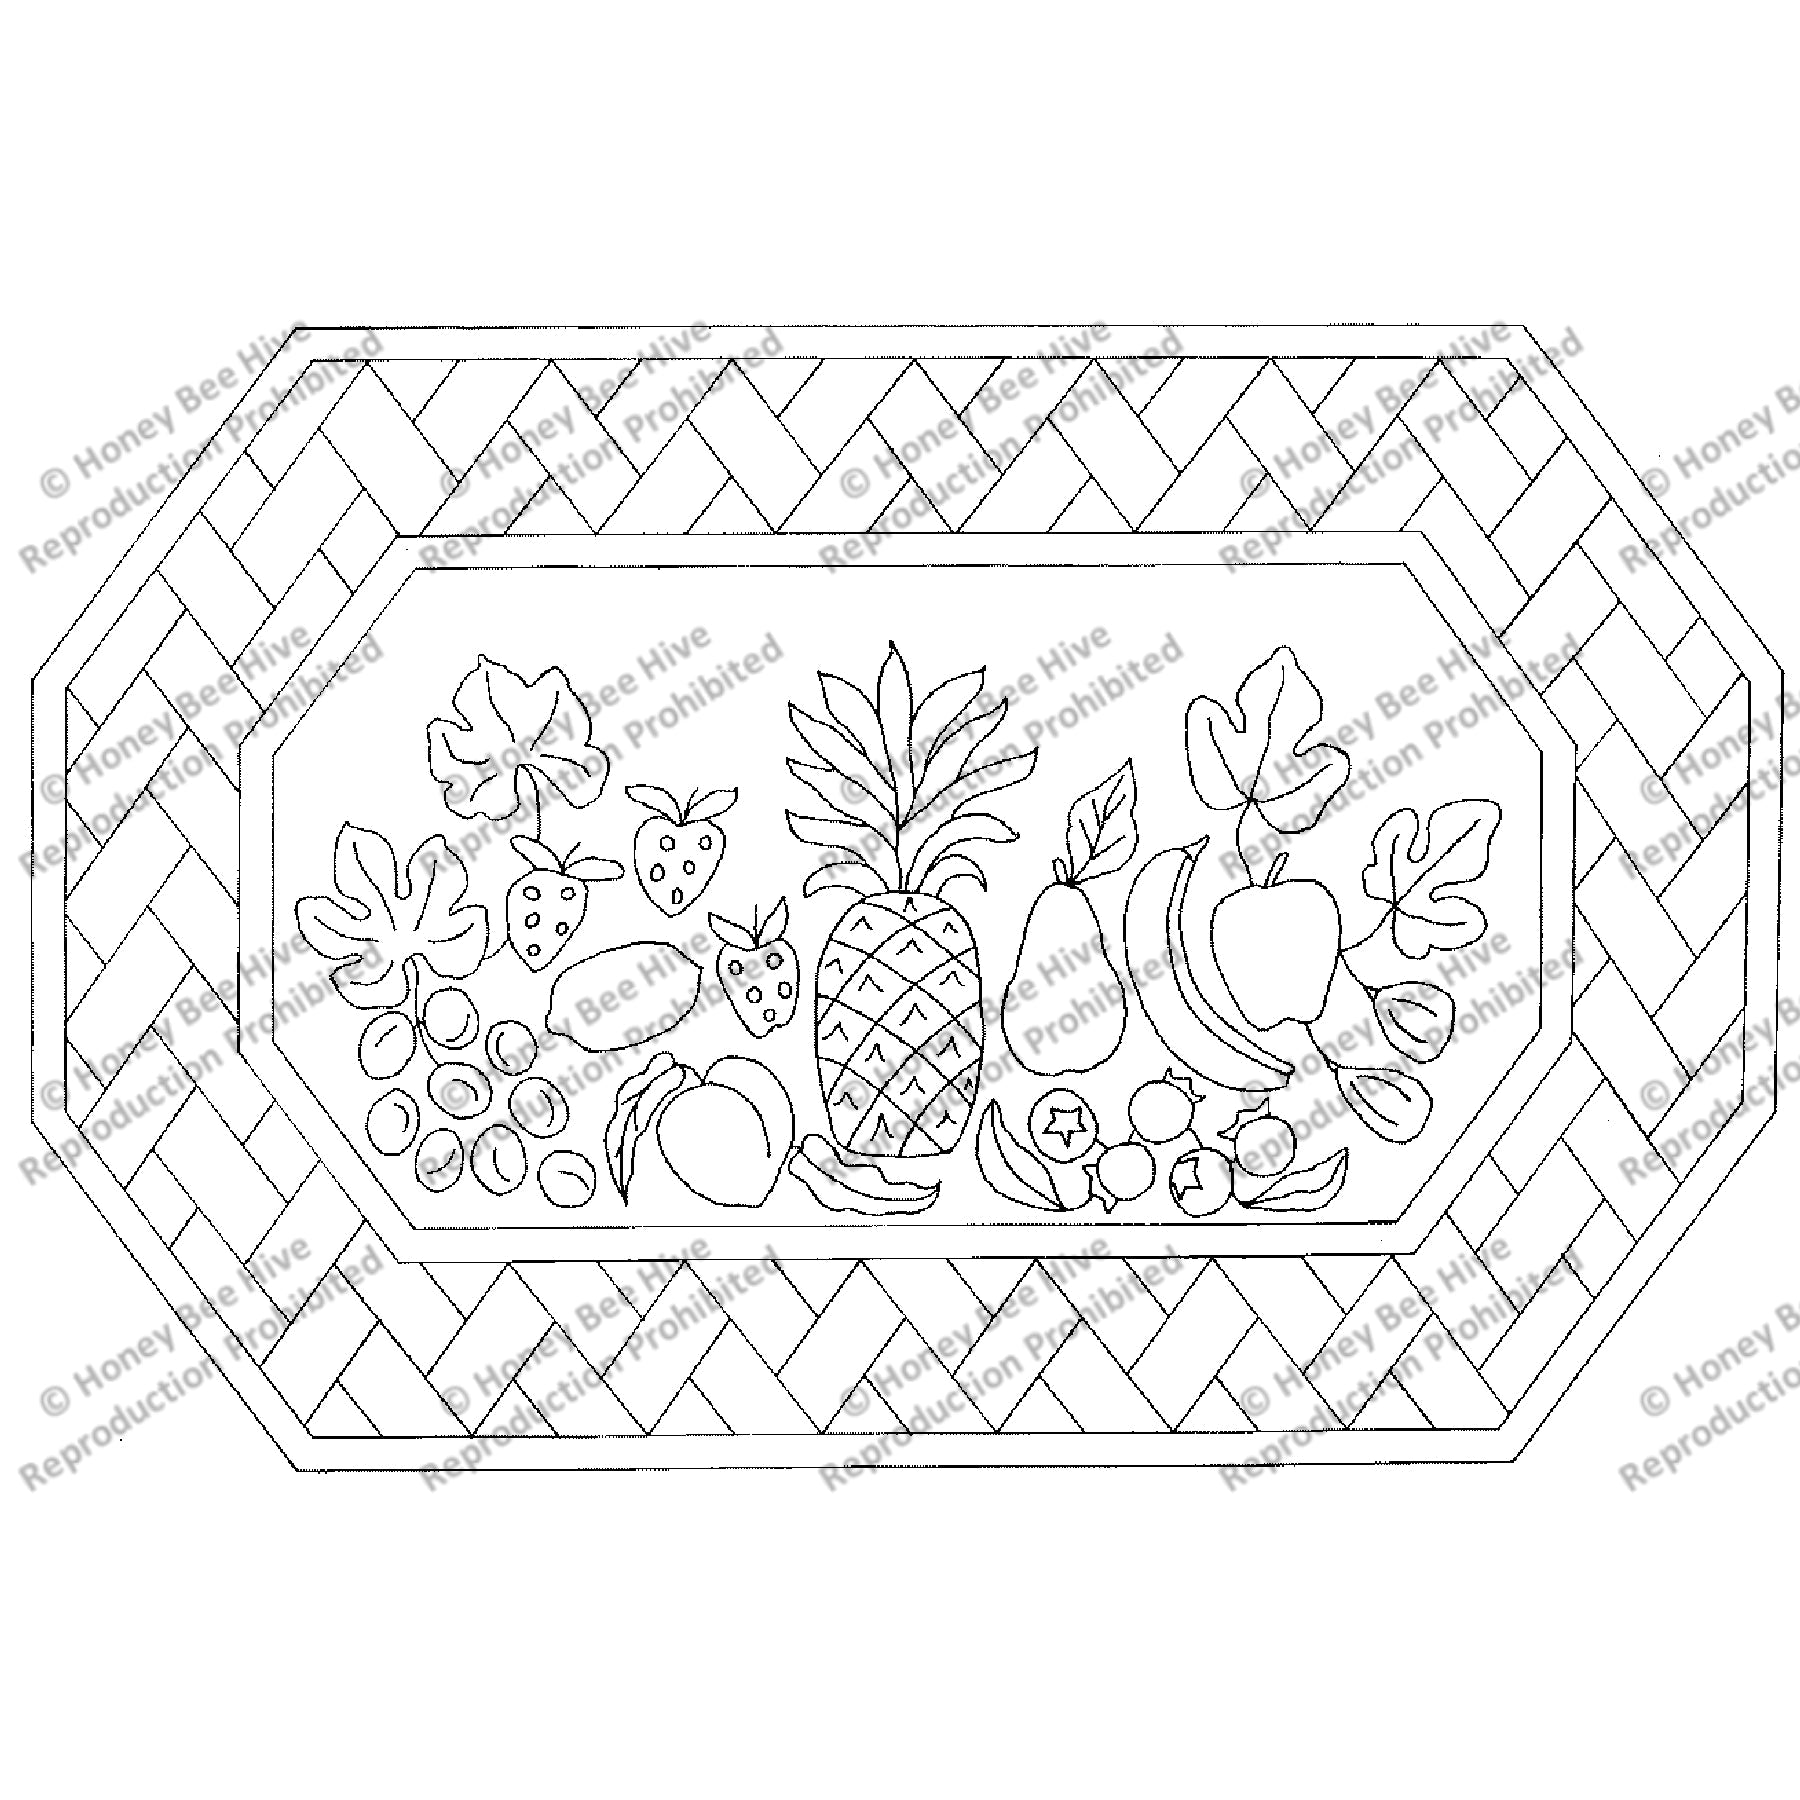 Fruit Basket, rug hooking pattern